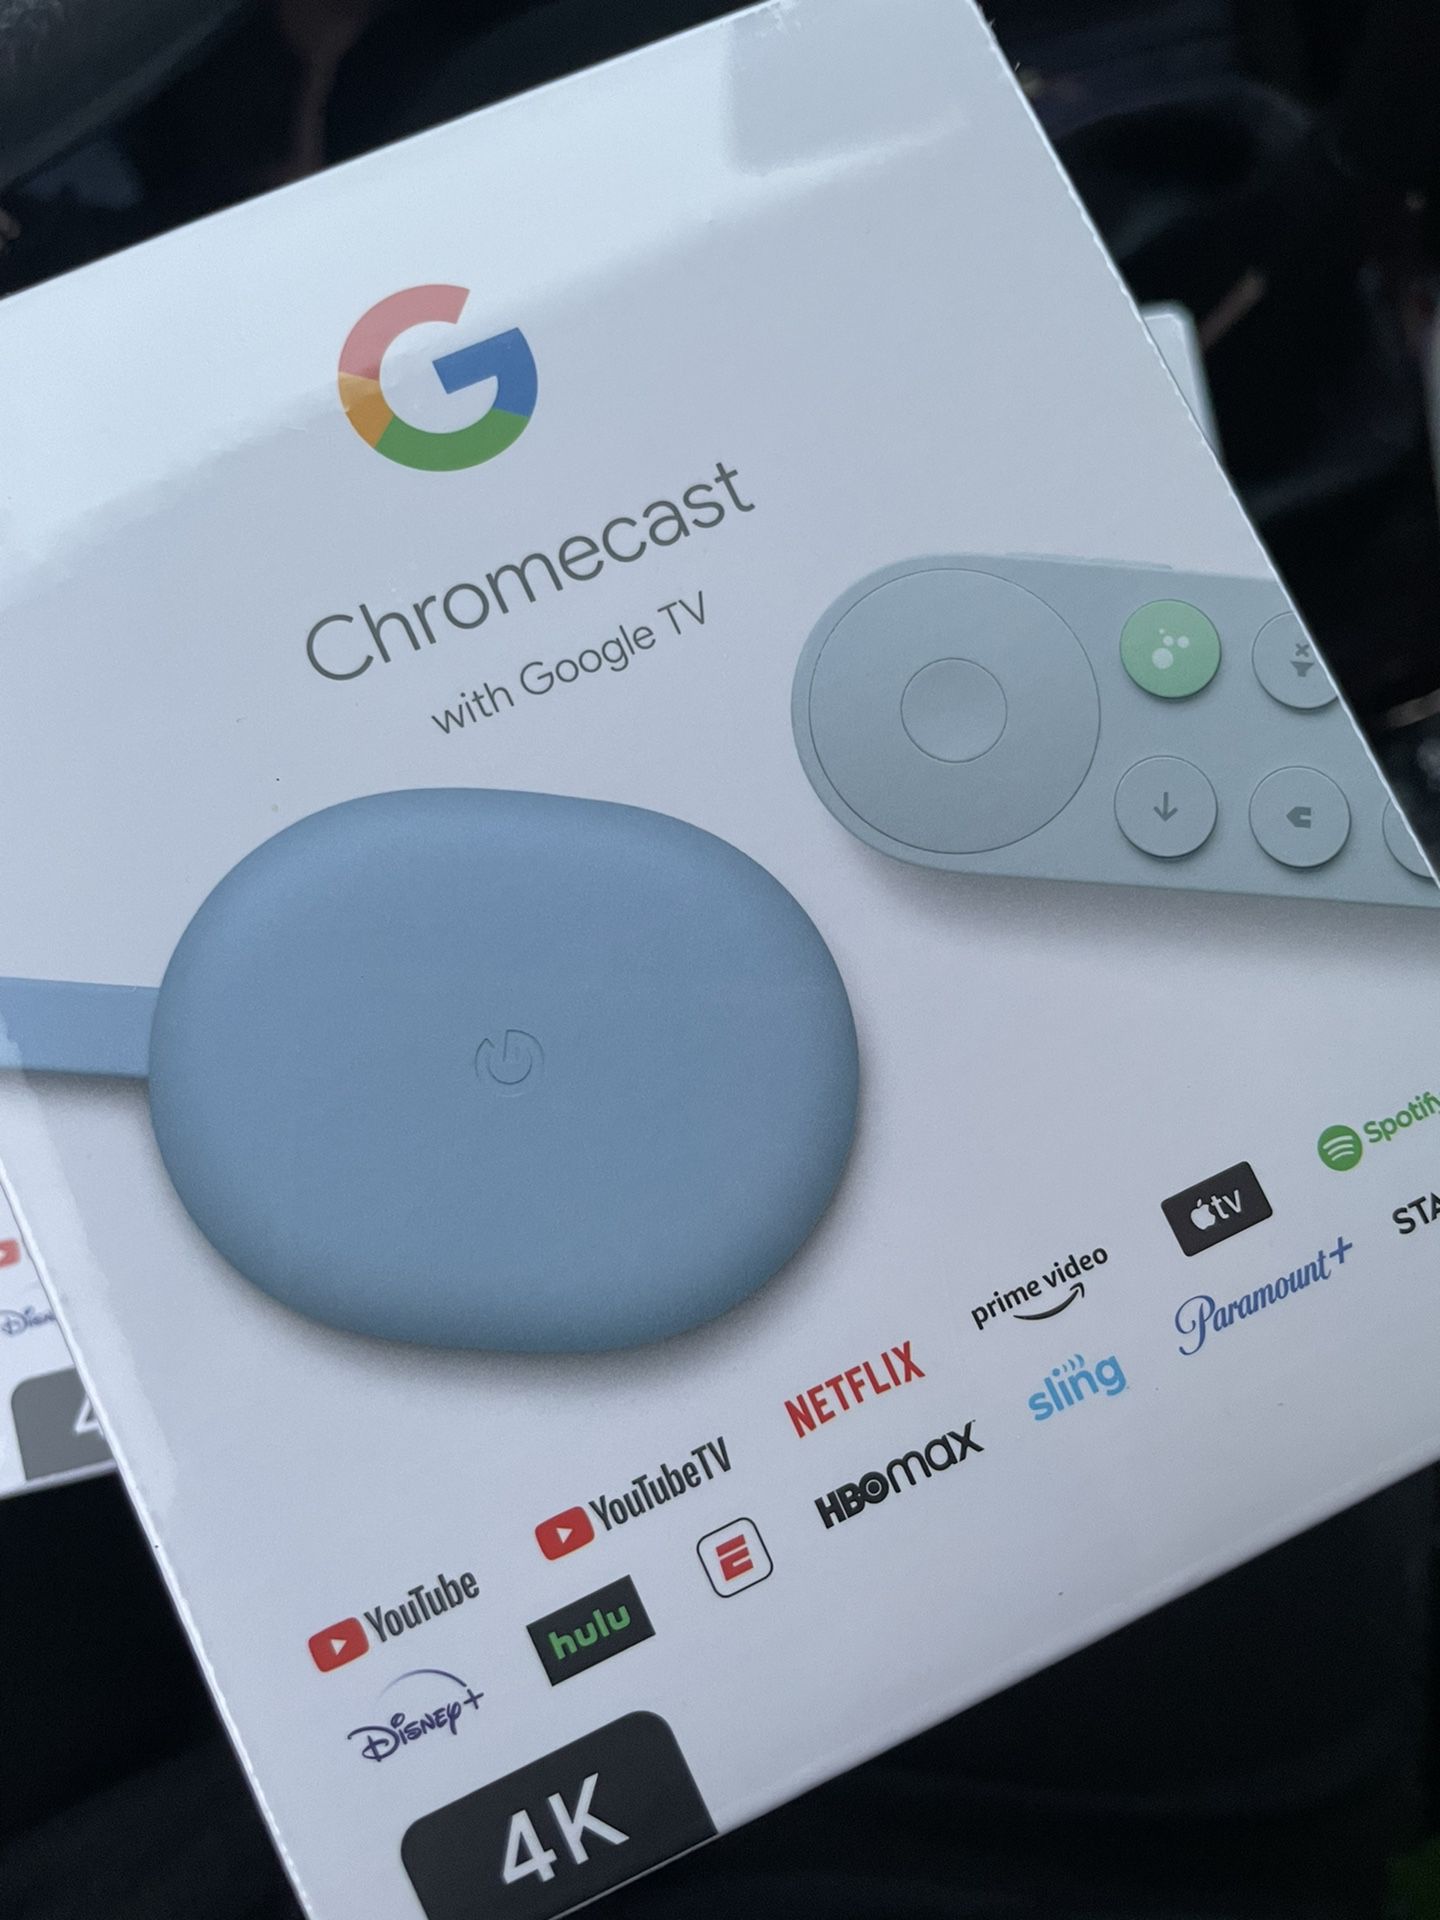 Chromecast w/ Google TV - Blue $35